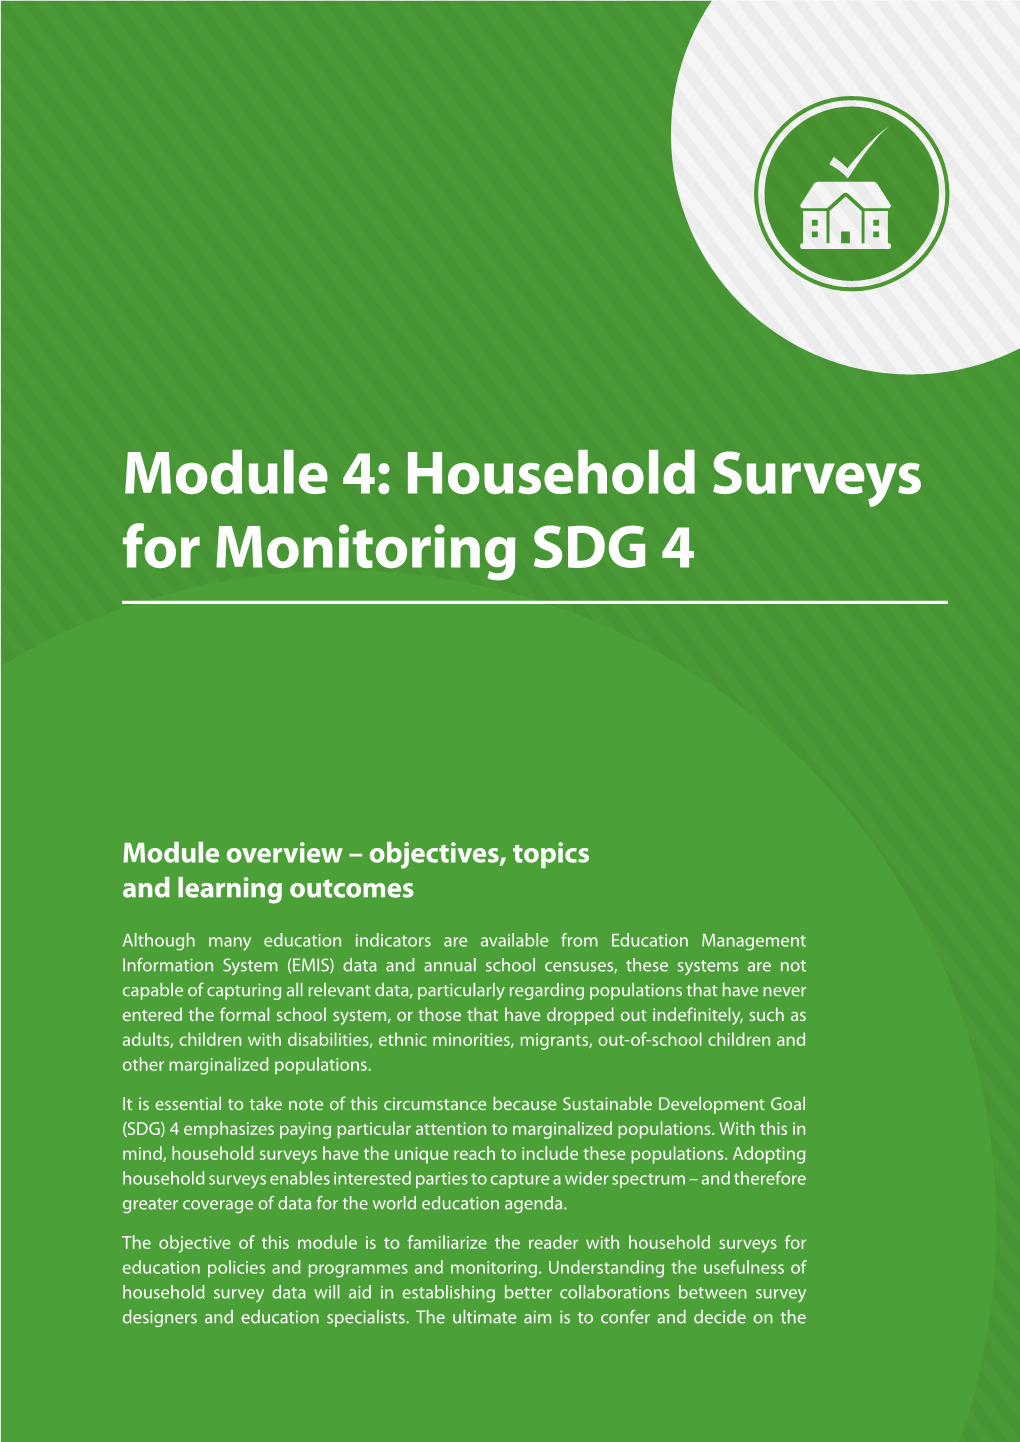 Module 4: Household Surveys for Monitoring SDG 4